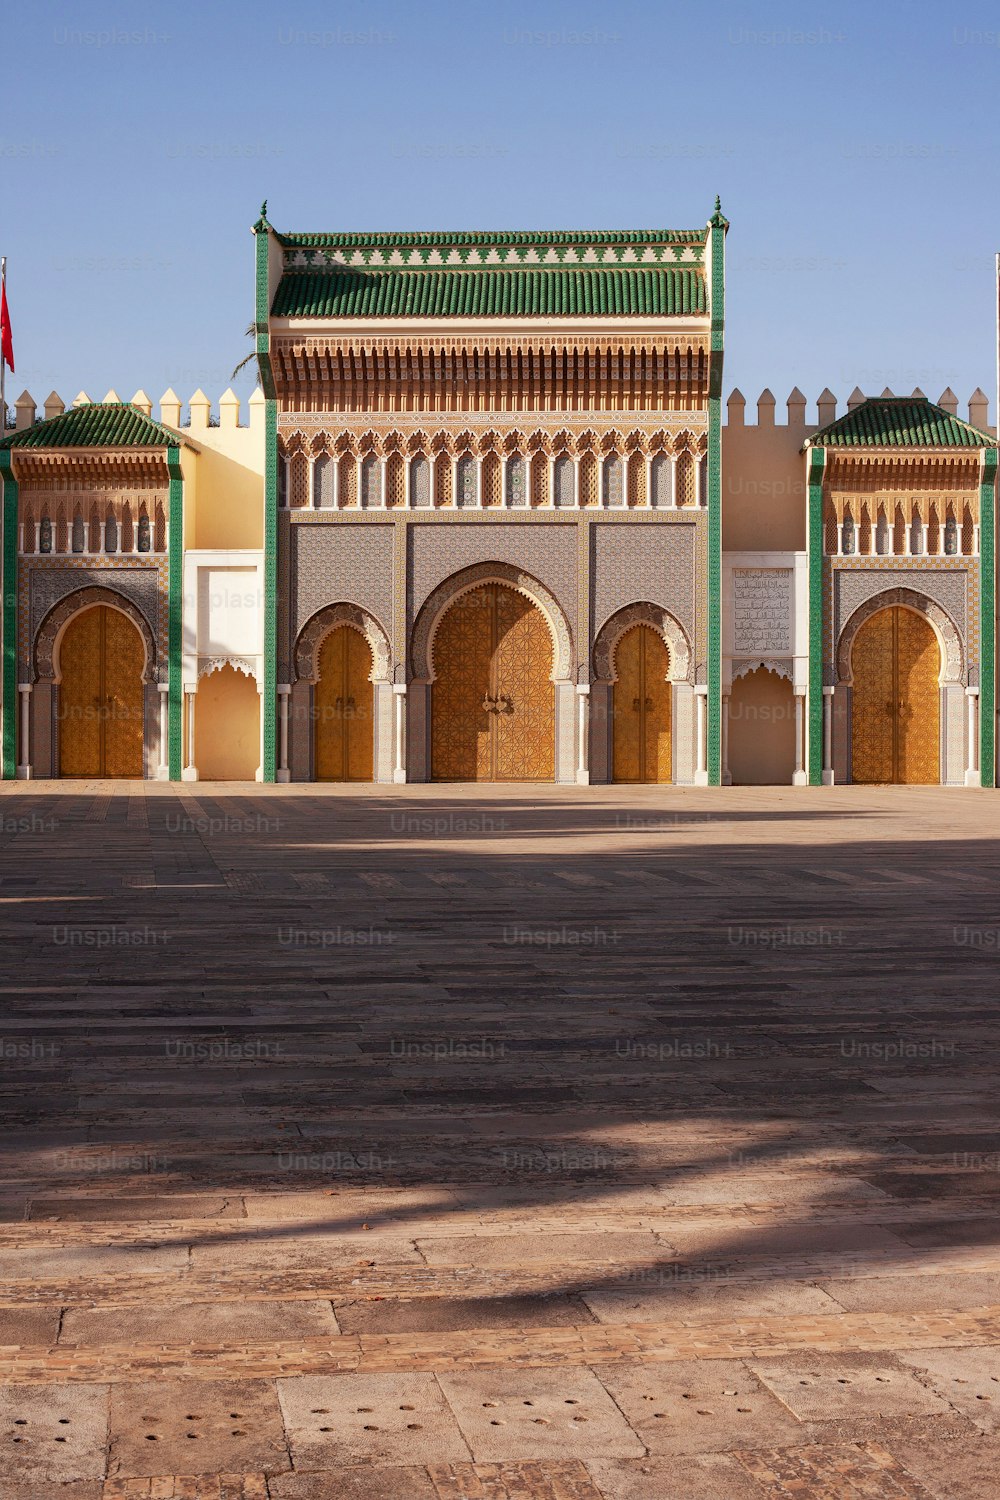 Una vista al aire libre del palacio real de Dar al-Makhzen del rey de Marruecos, ciudad de Fez, toma vertical